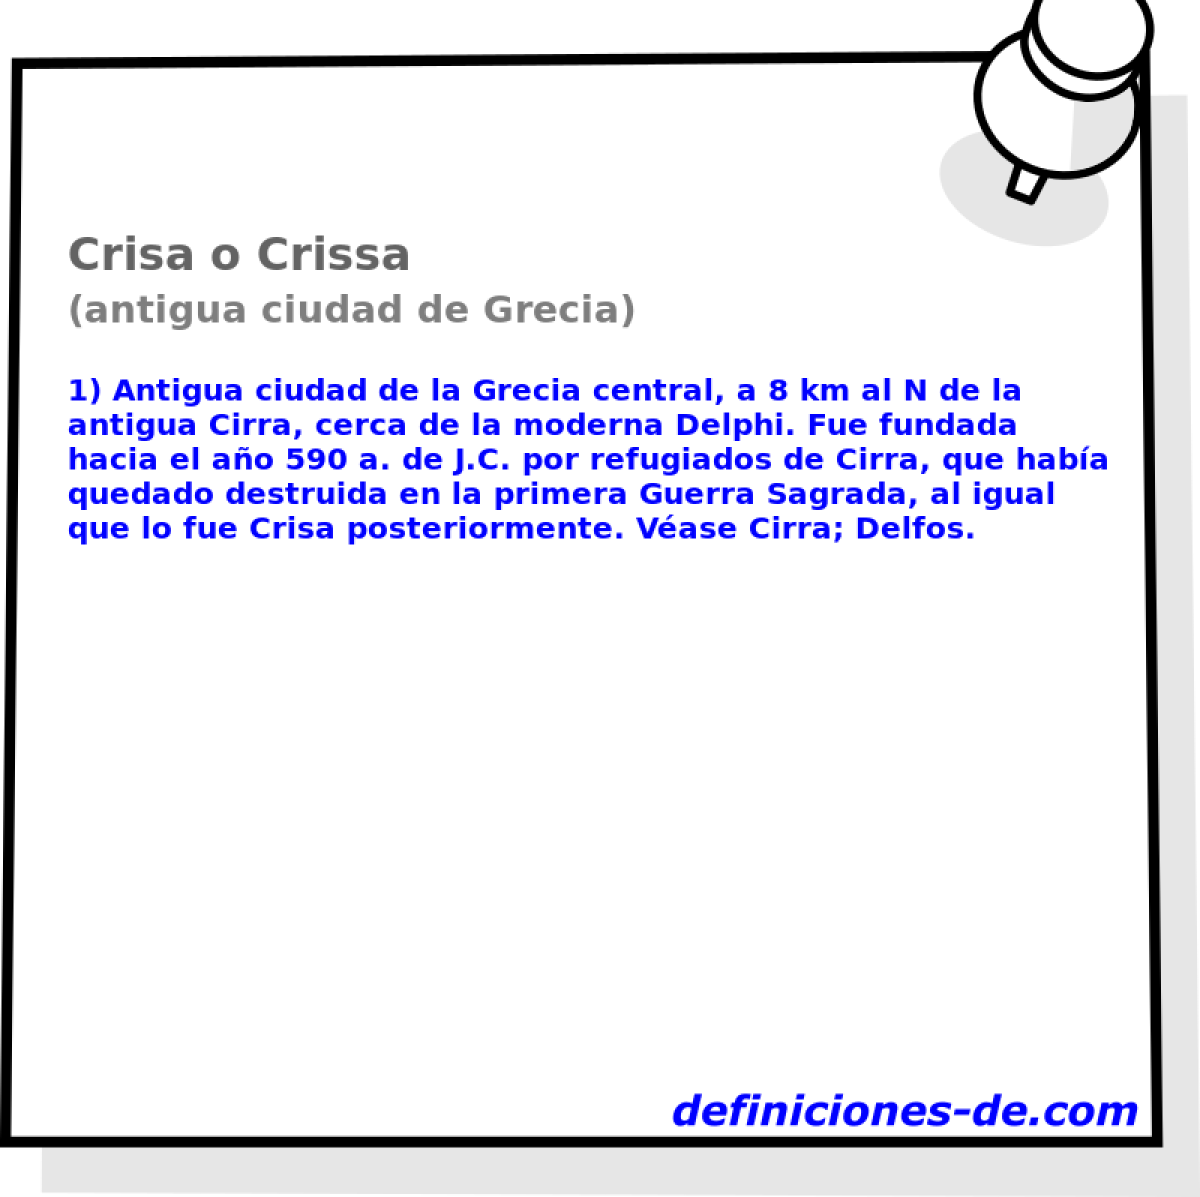 Crisa o Crissa (antigua ciudad de Grecia)